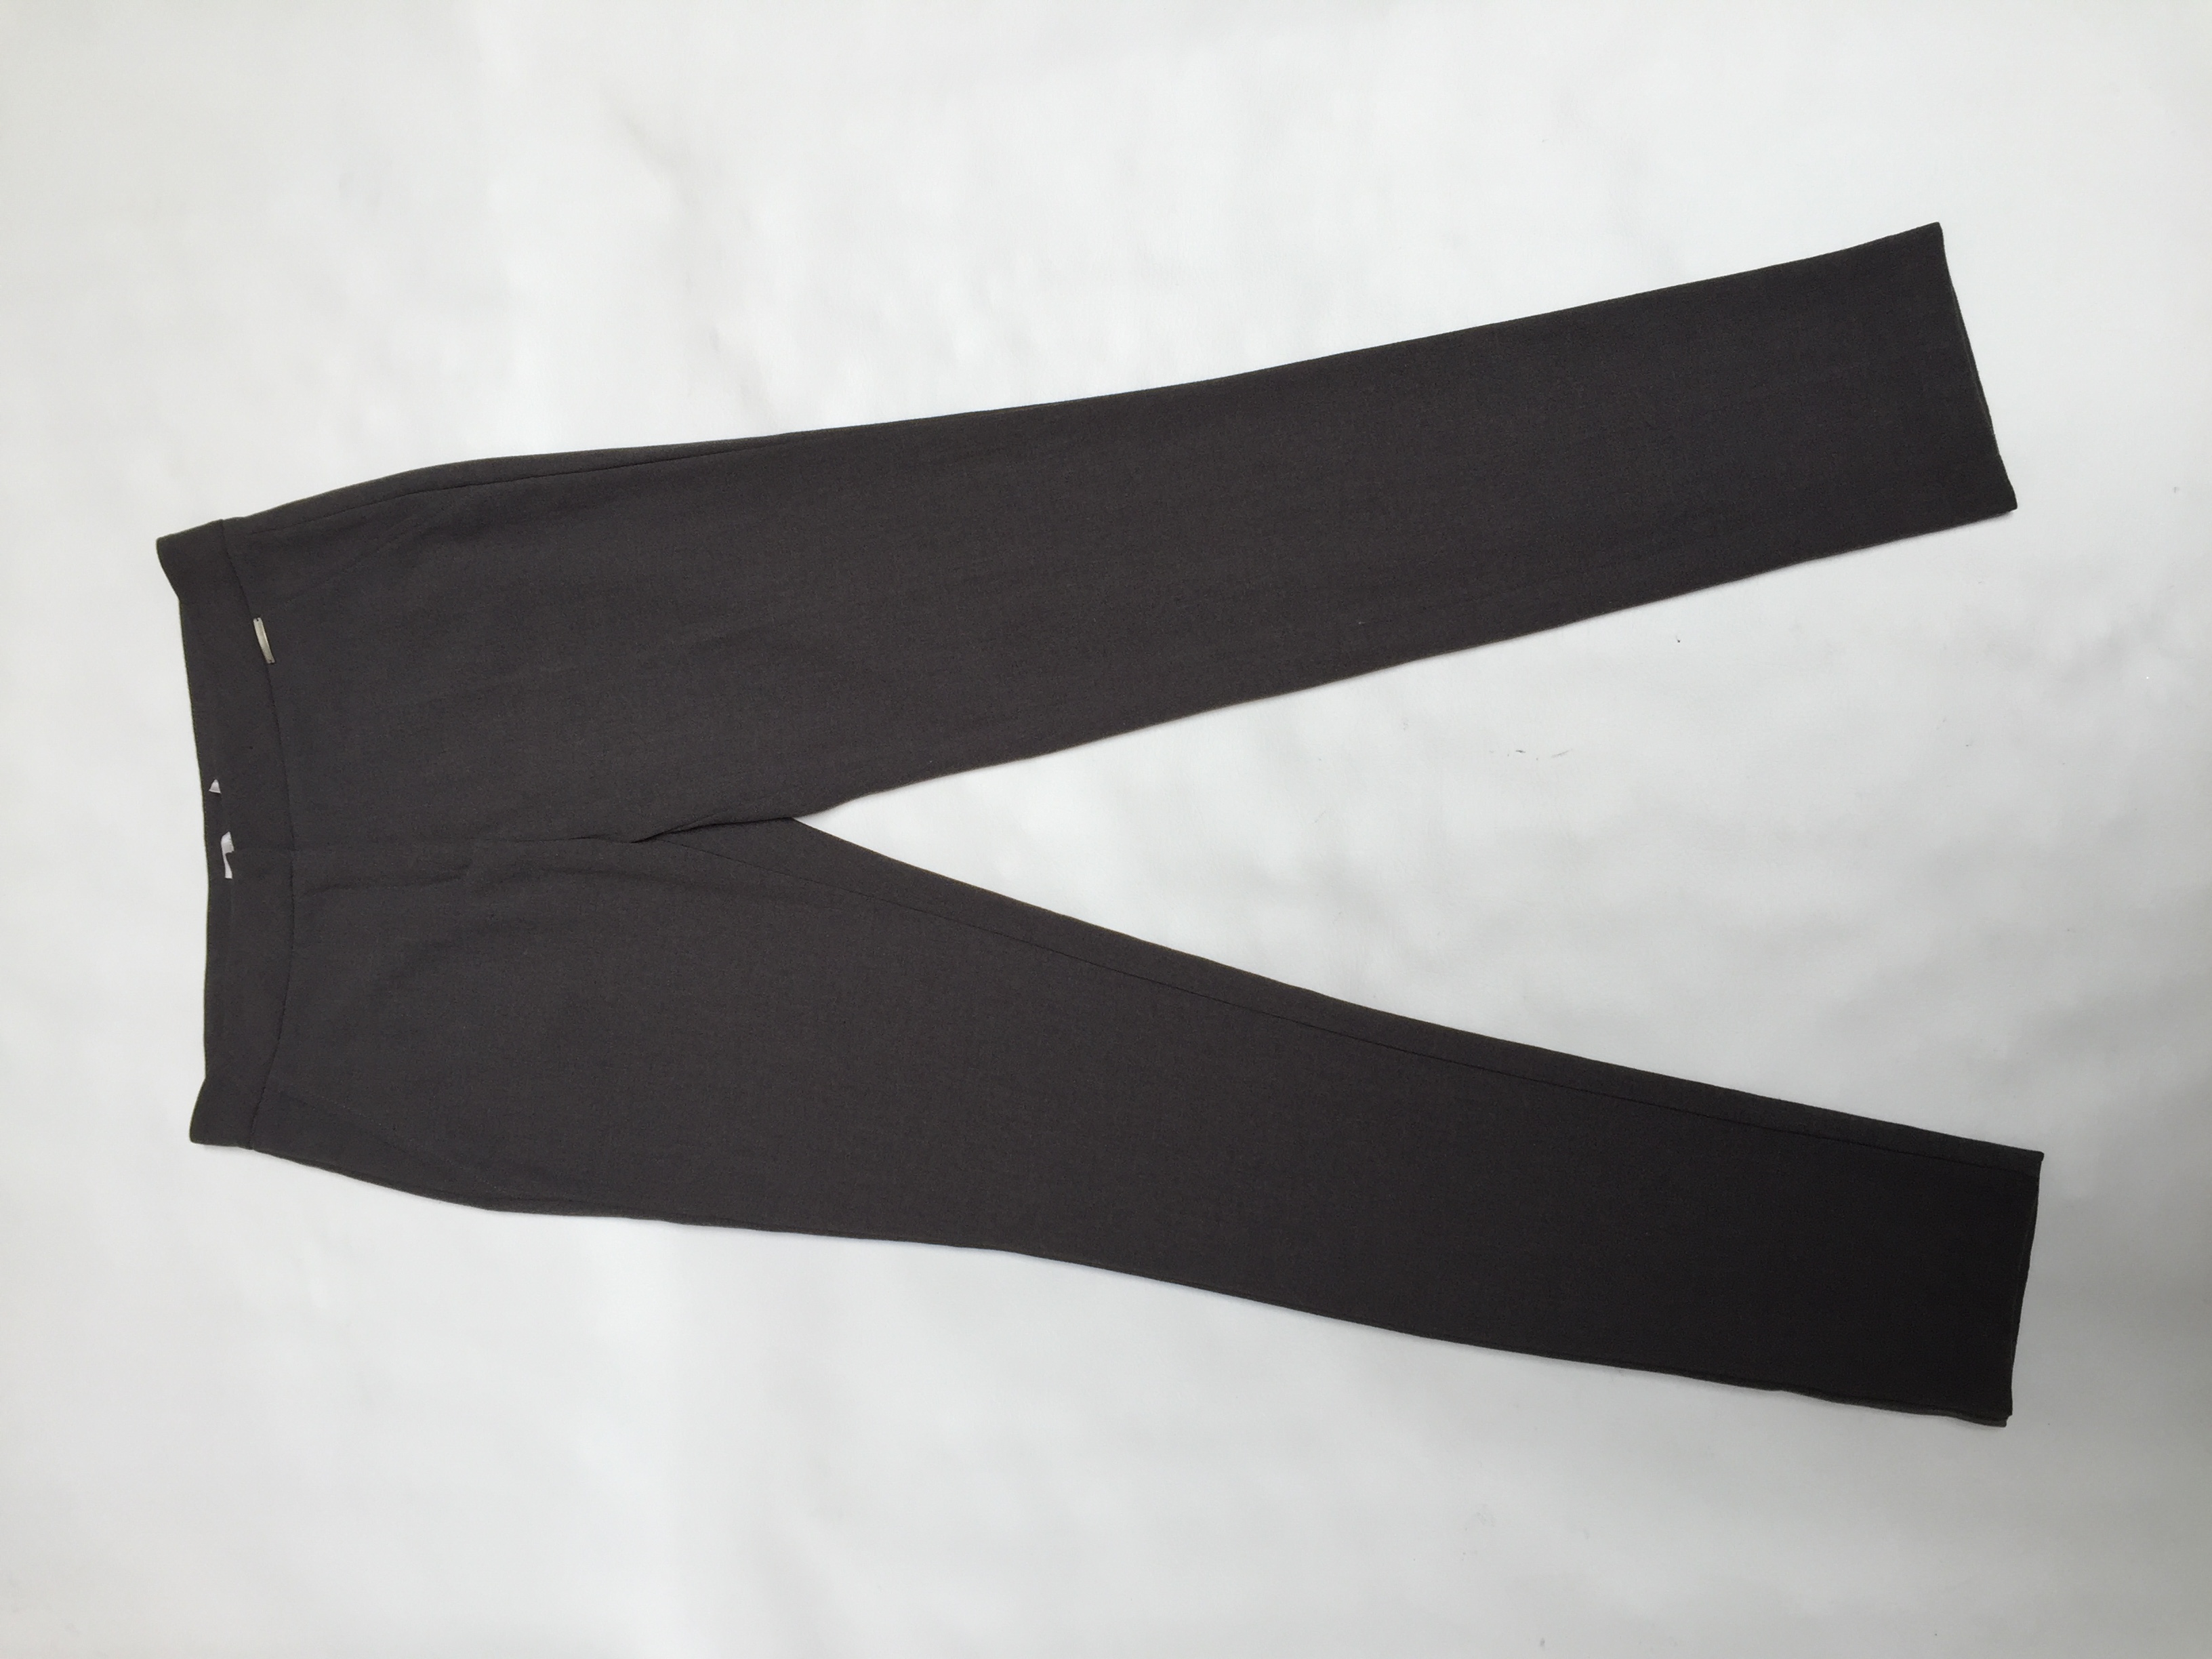 Pantalón Michelle Belau tela tipo sastre plomo con broche, cierre y es pitillo. Pretina 72cm
Talla 26